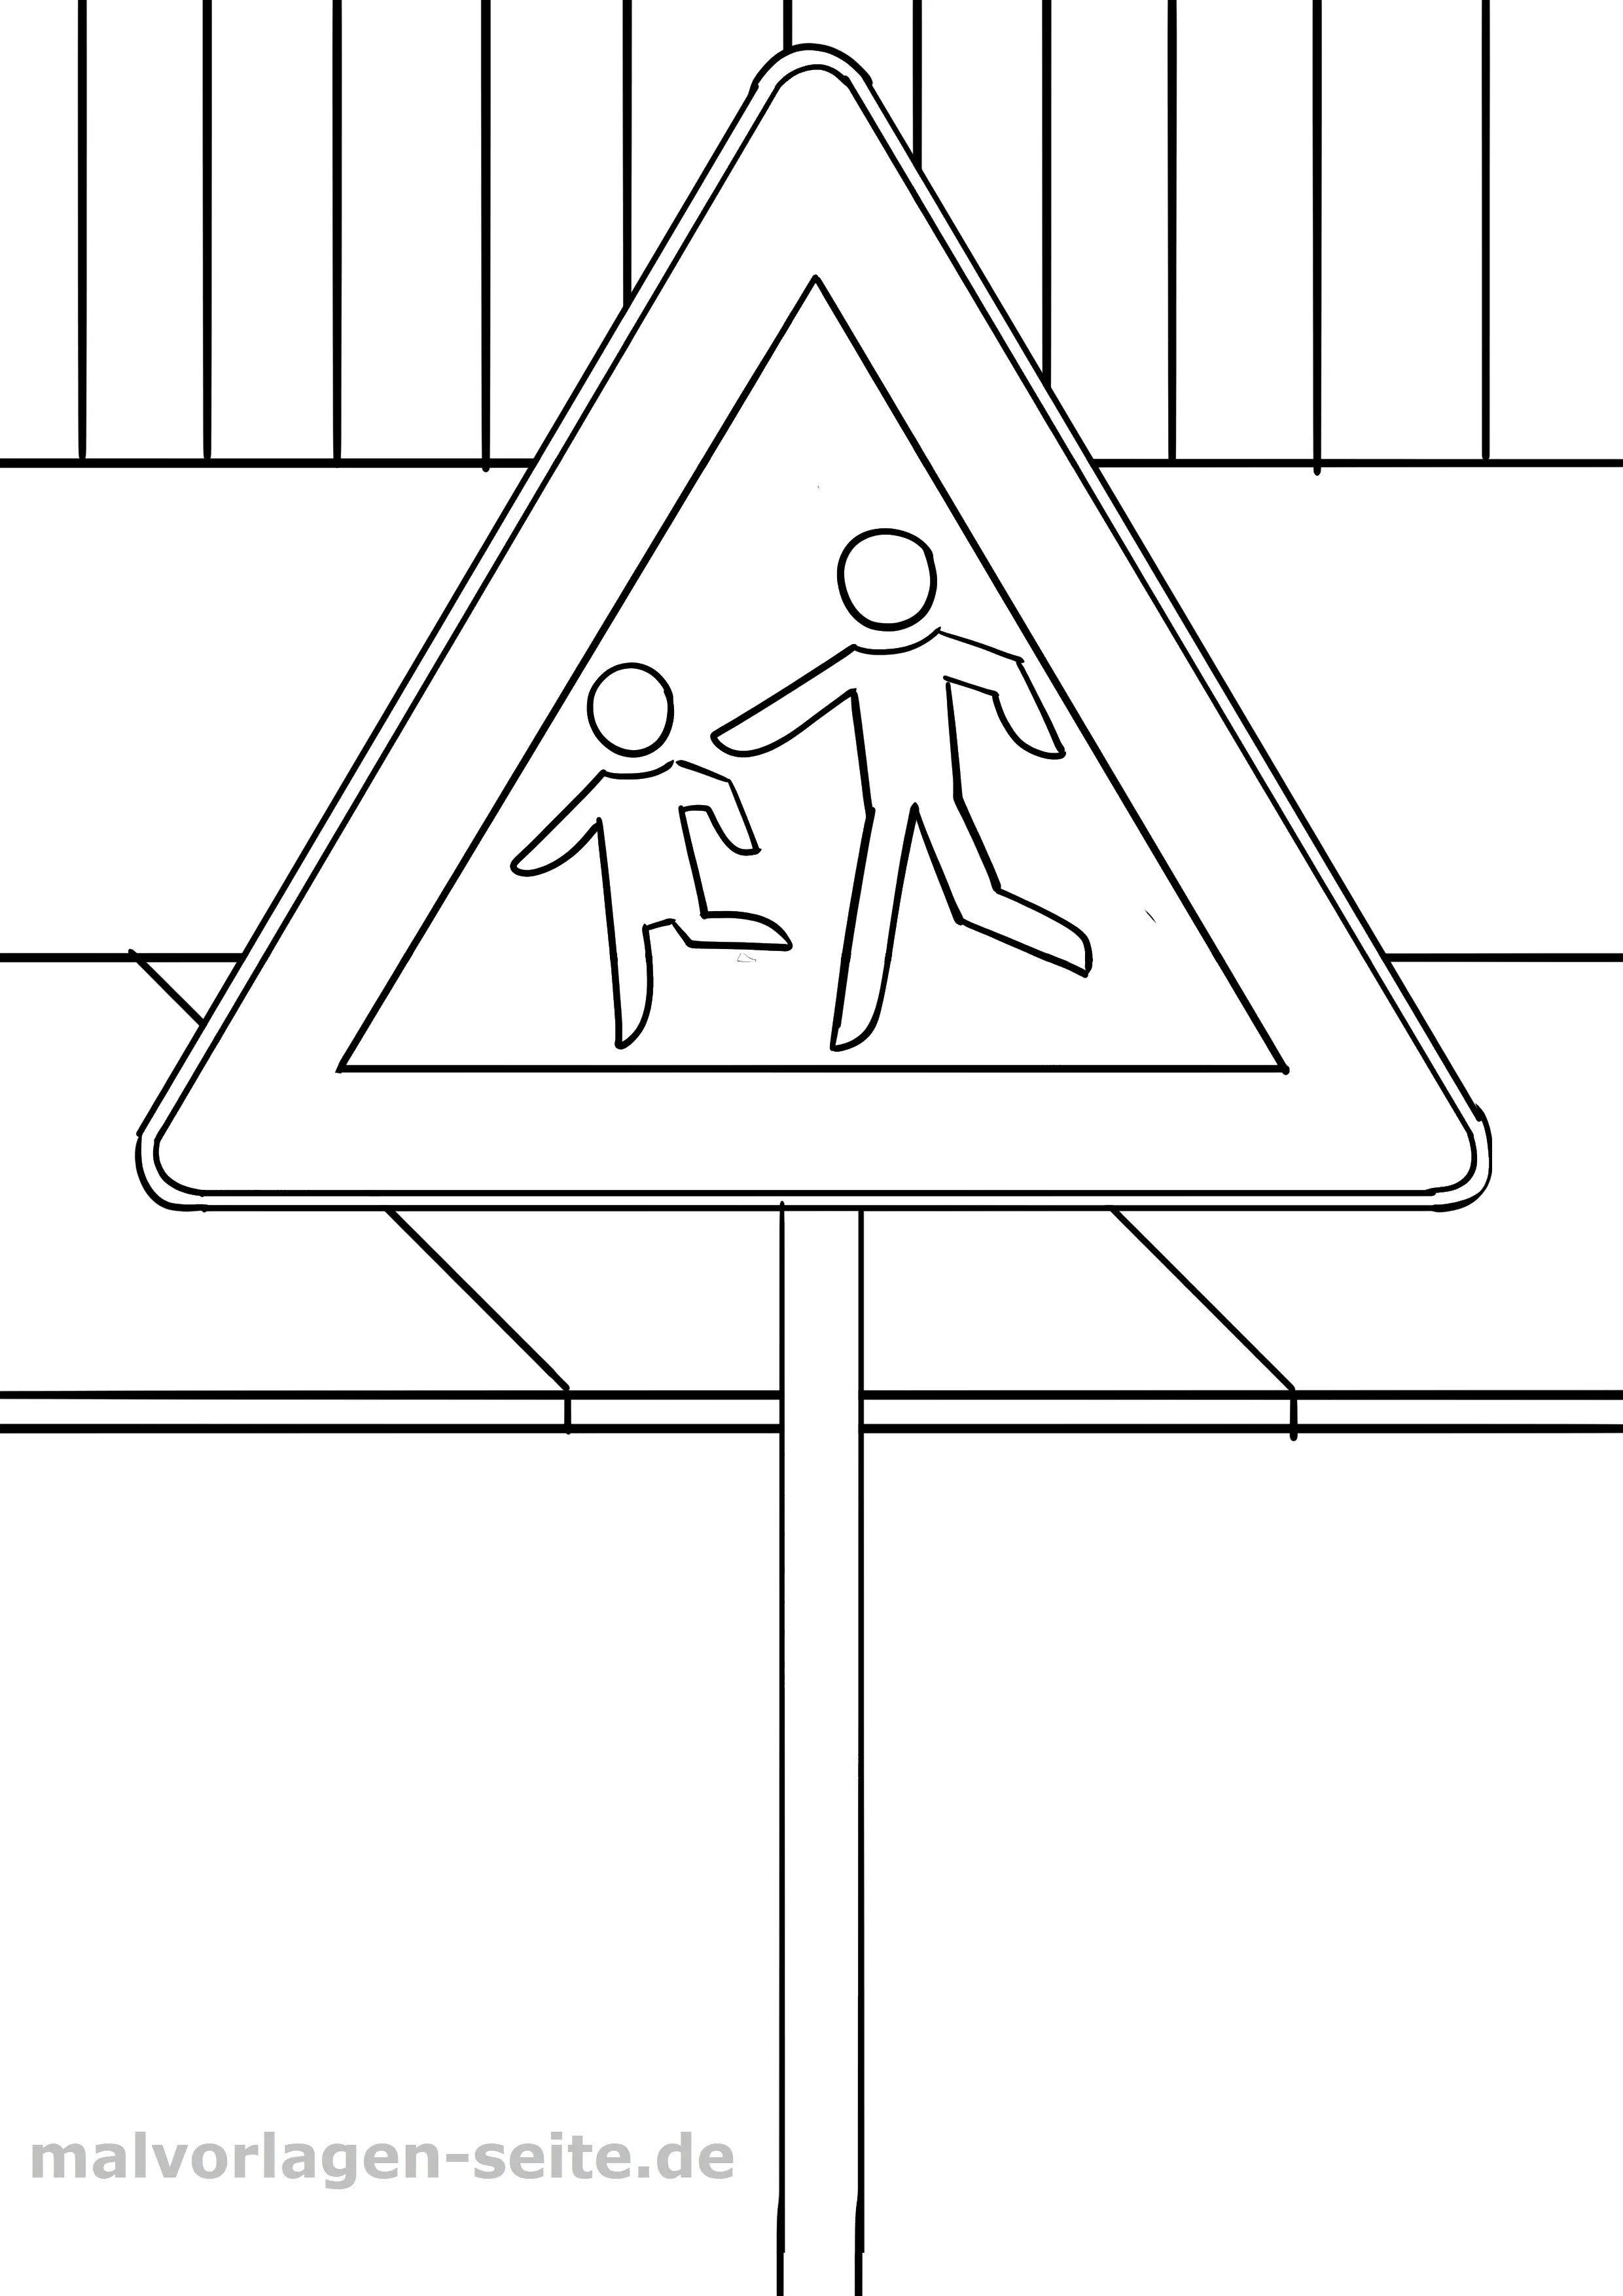 Раскрашивать дорожный знак. Дорожные знаки раскраска. Дорожные знаки раскраска для детей. Раскраска знаки дорожного движения для детей. Знаки ПДД раскраска.